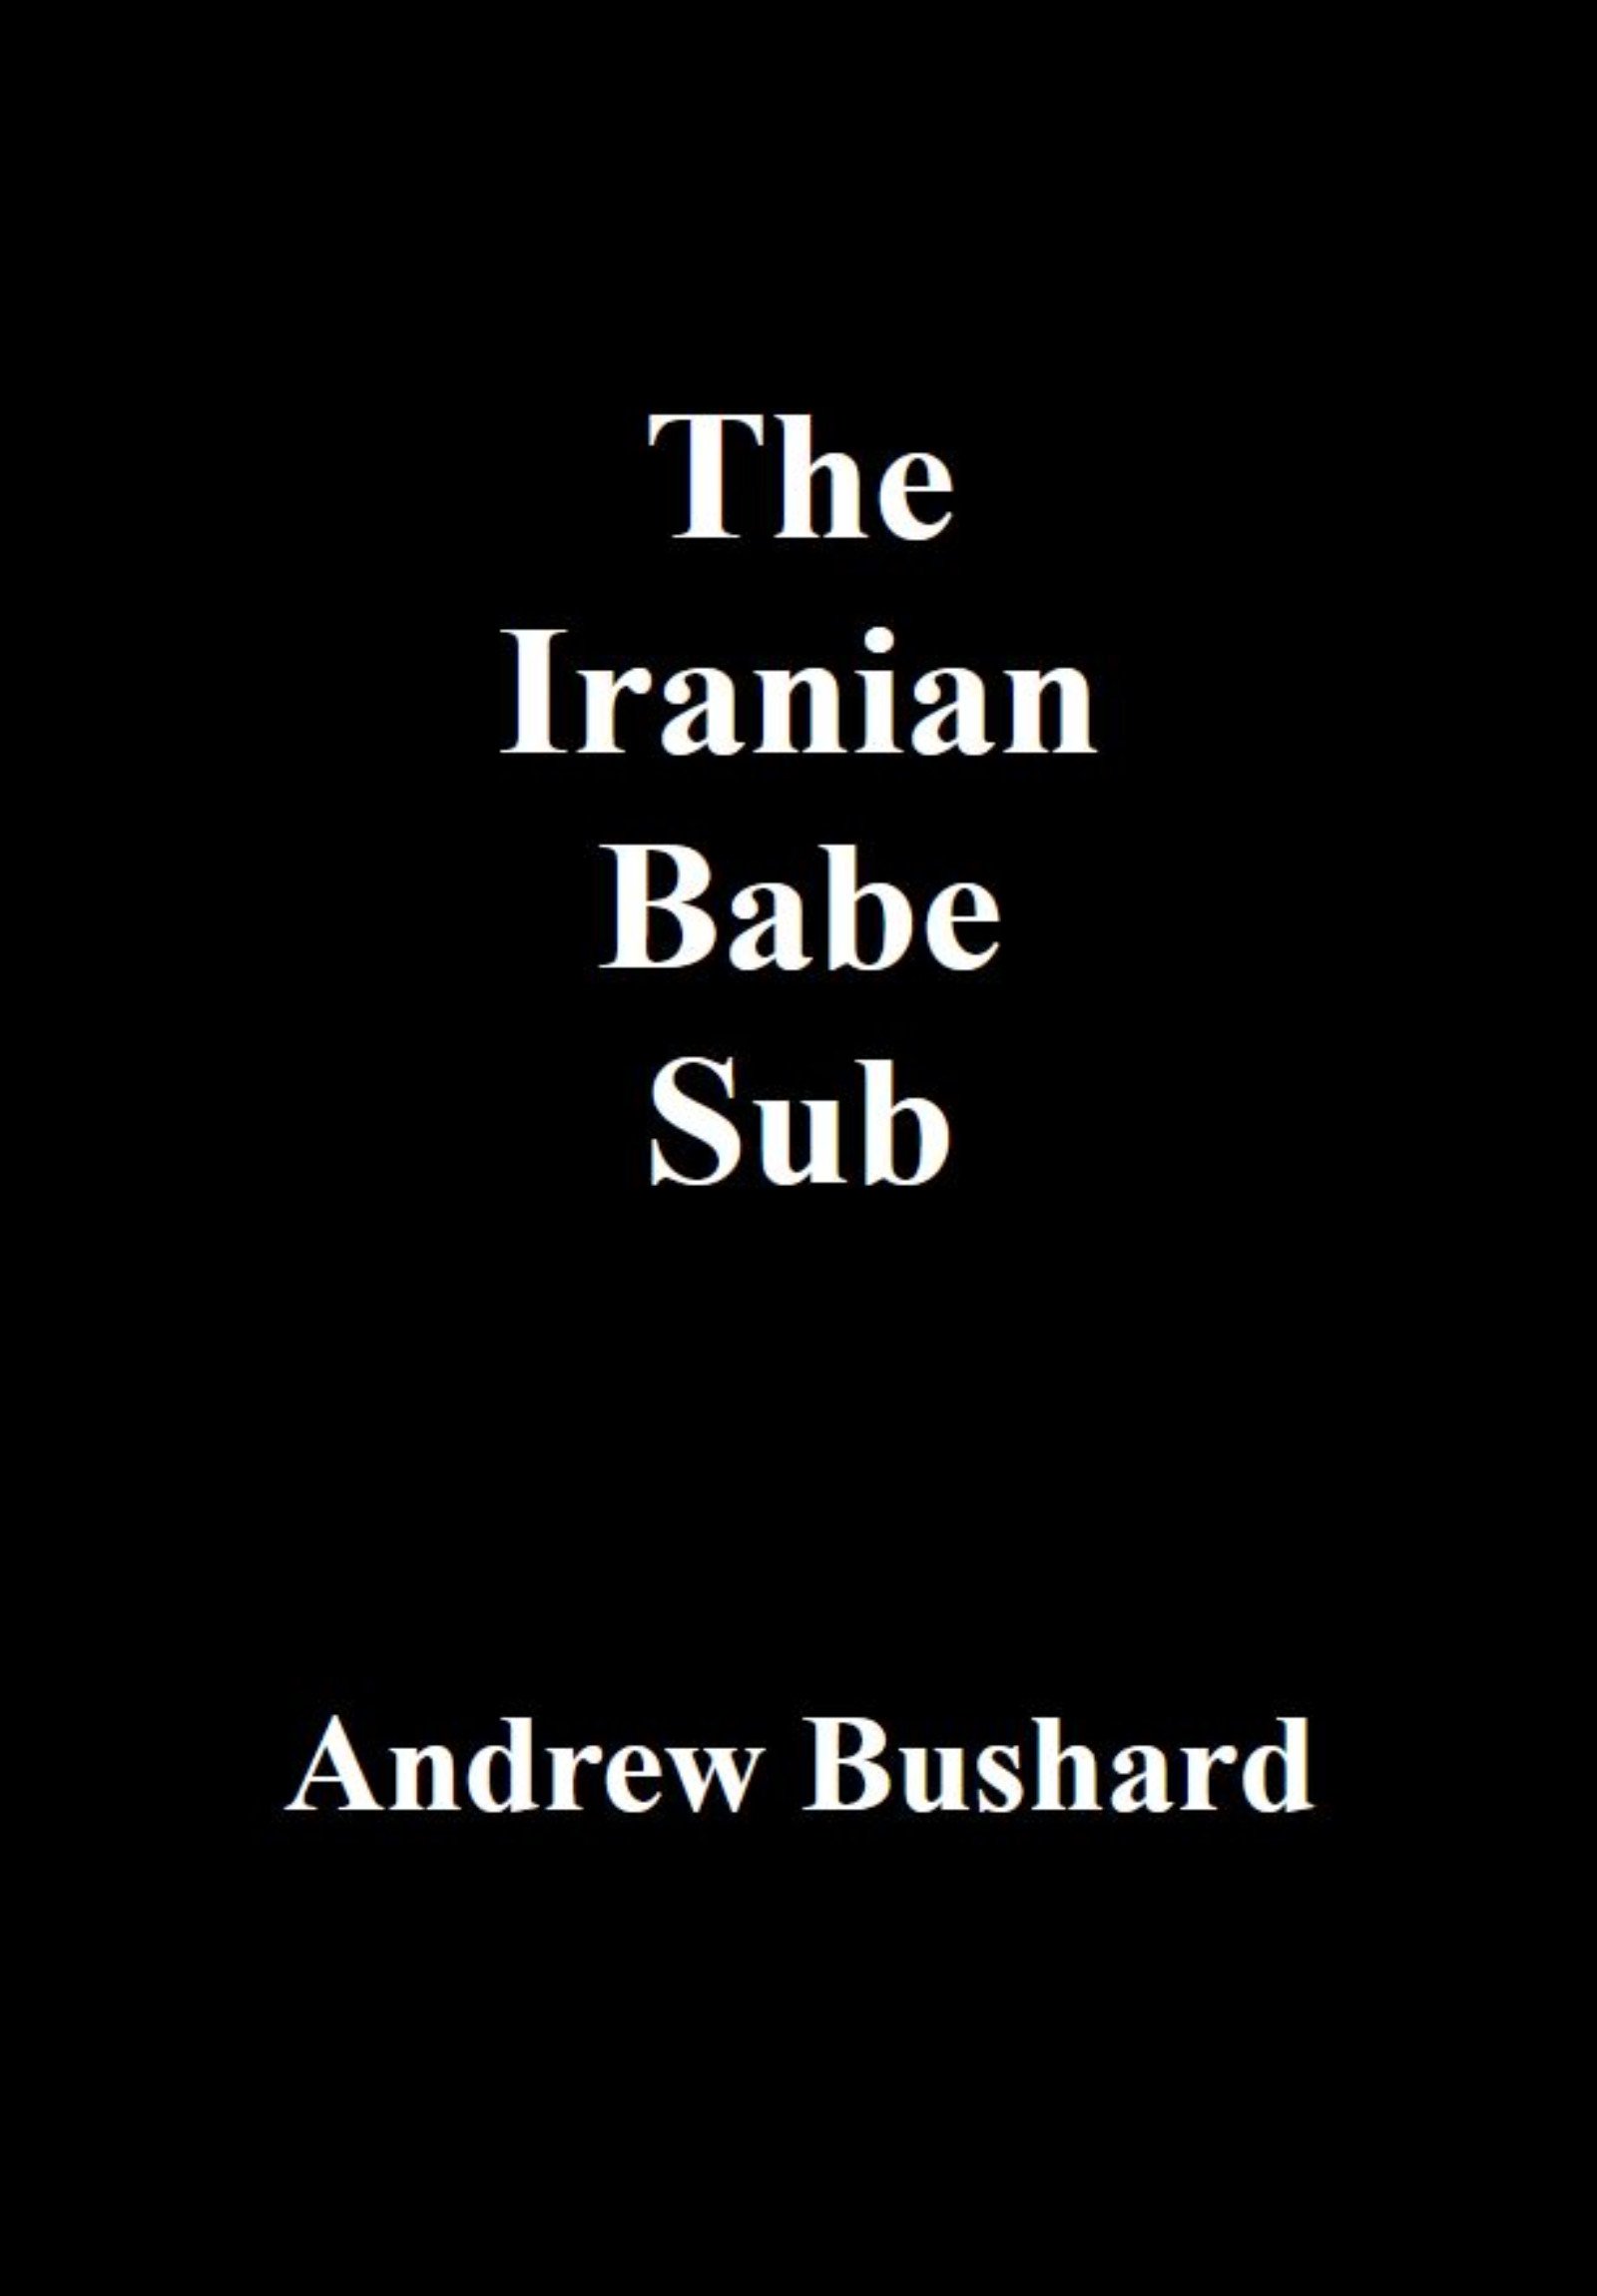 The Iranian Babe Sub